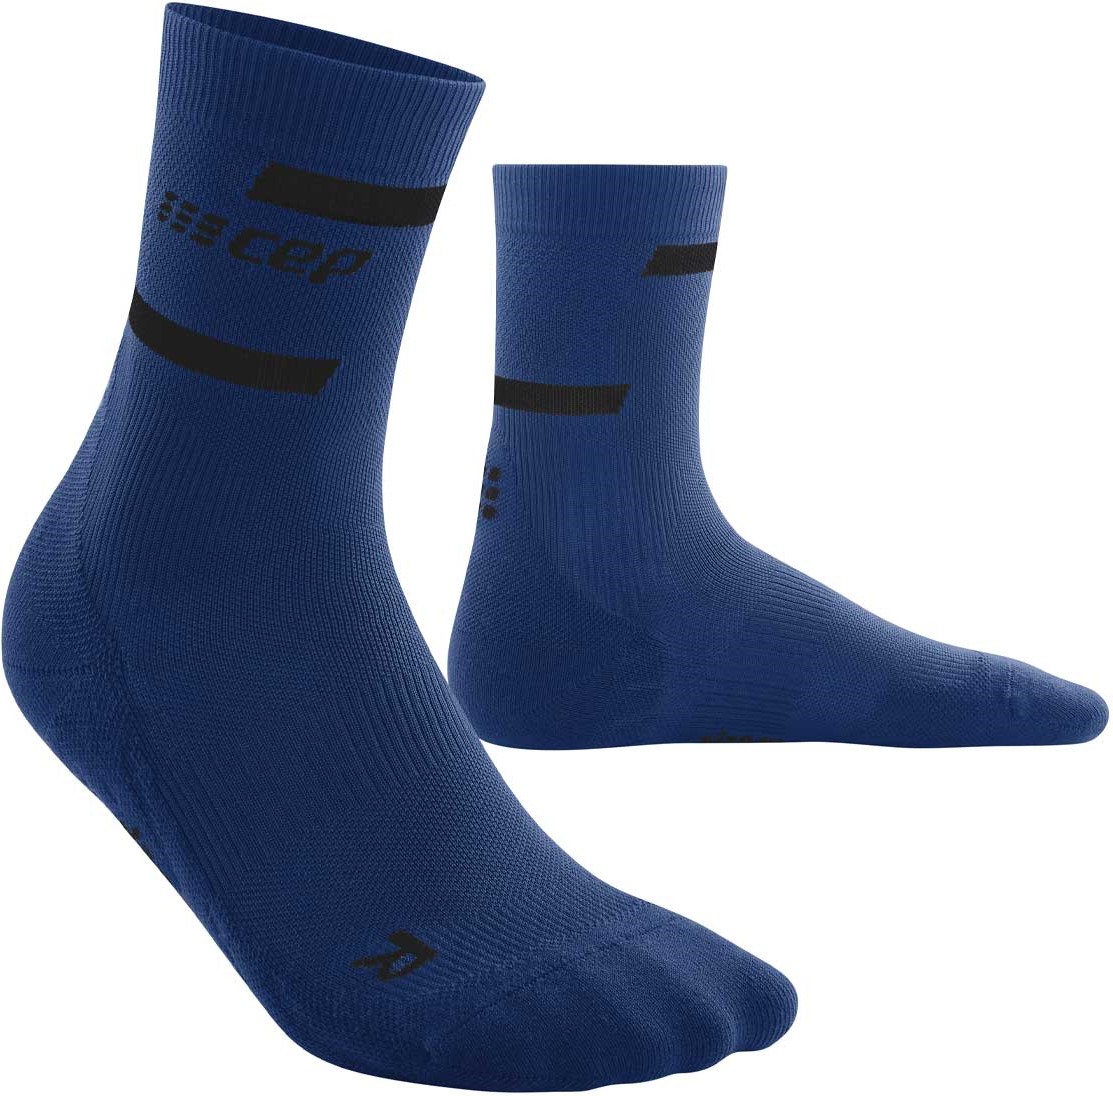 CEP pánské běžecké kompresní vysoké ponožky 4.0 - blue III (Vel. chodidla 39-42)